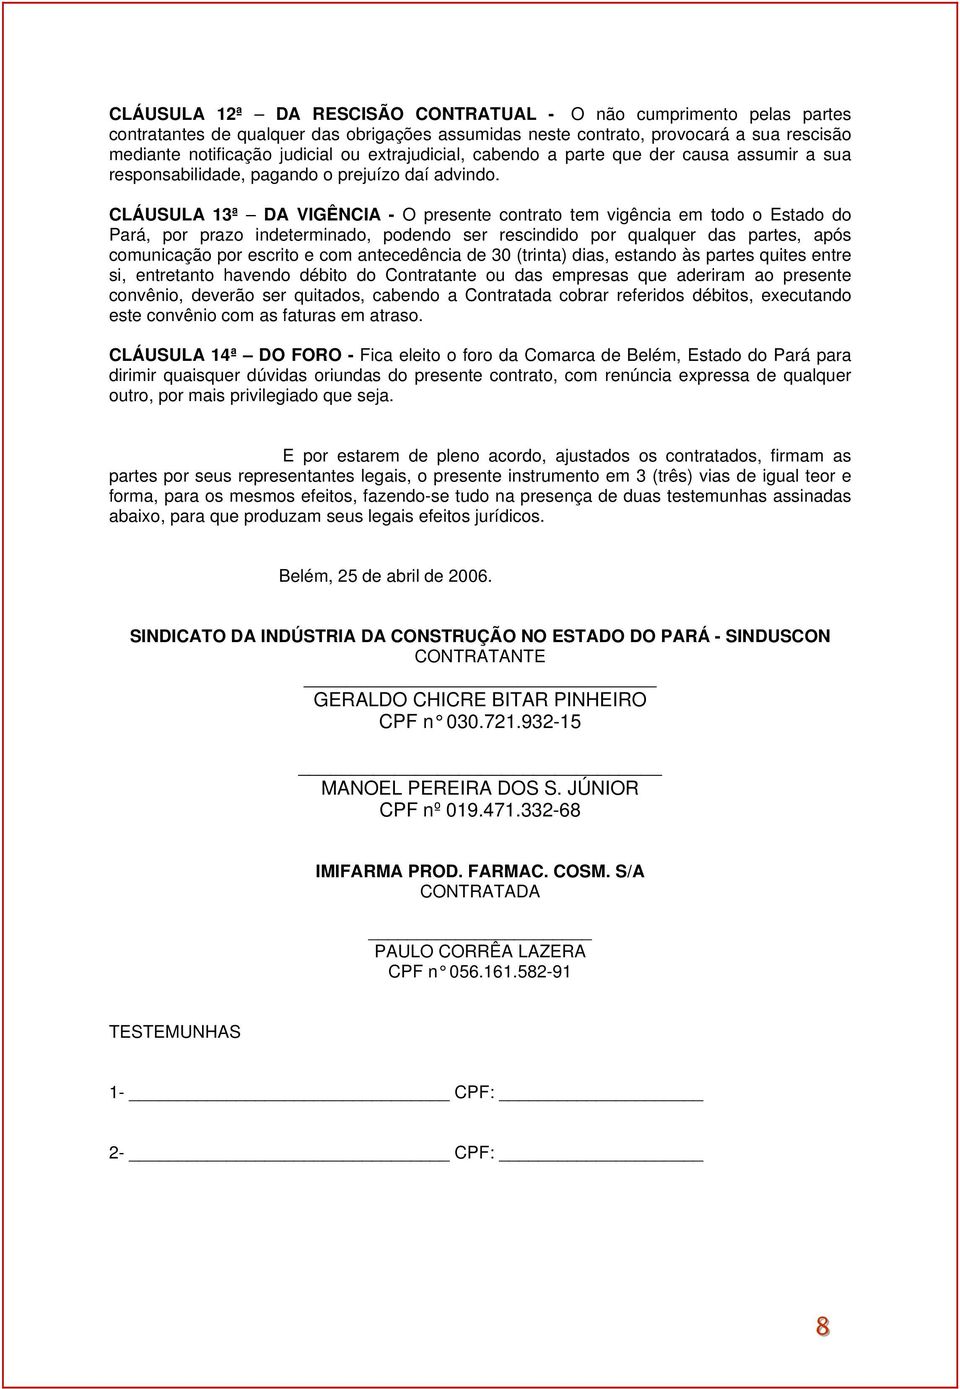 CLÁUSULA 13ª DA VIGÊNCIA - O presente contrato tem vigência em todo o Estado do Pará, por prazo indeterminado, podendo ser rescindido por qualquer das partes, após comunicação por escrito e com